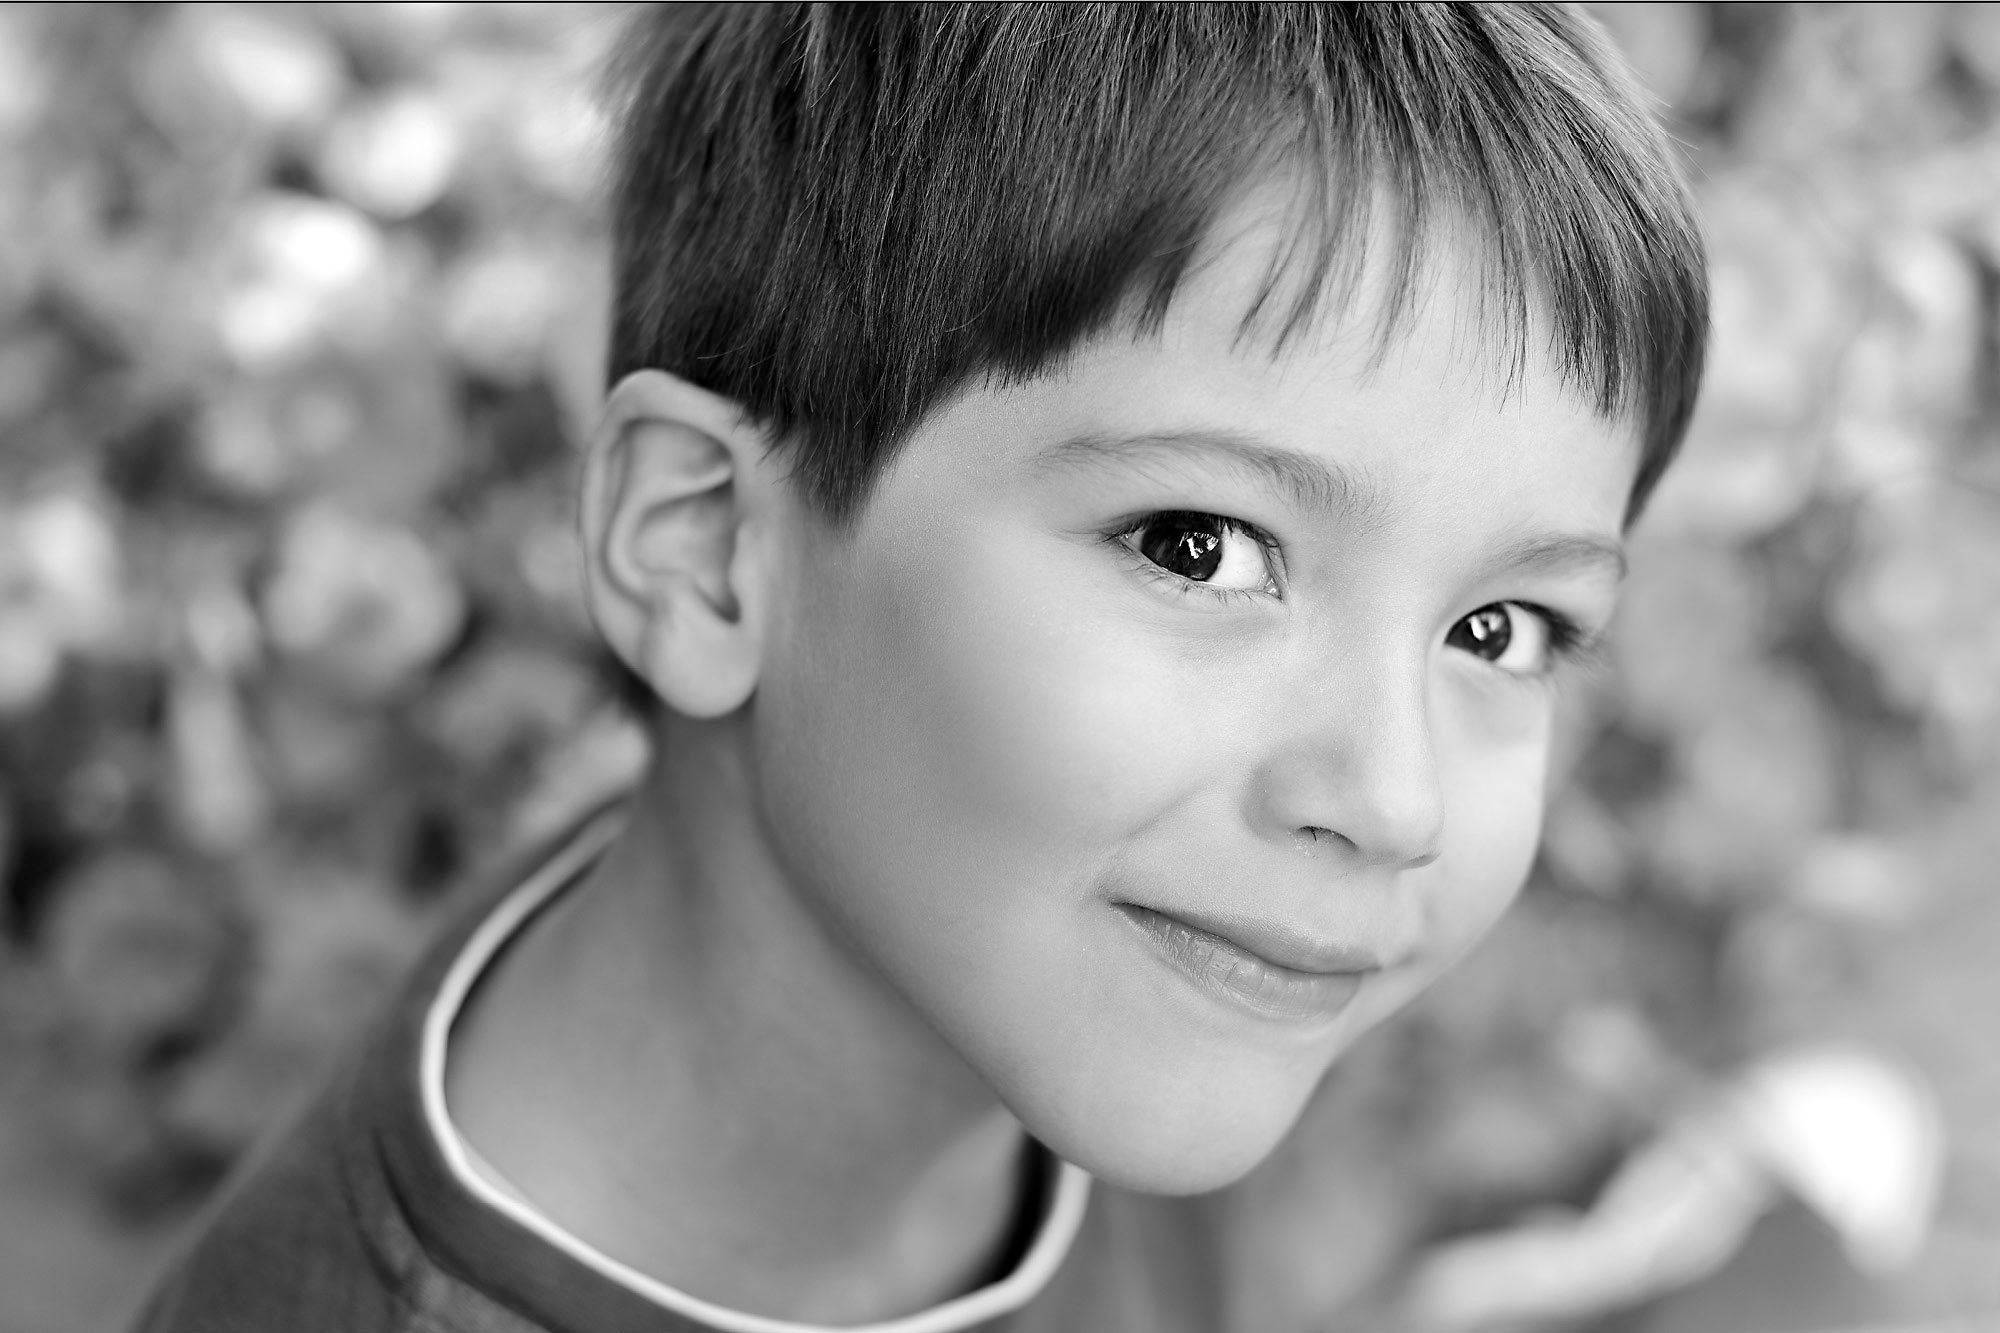 Porträtfotografie eines Jungen (Schwarz/Weiss-Aufnahme)